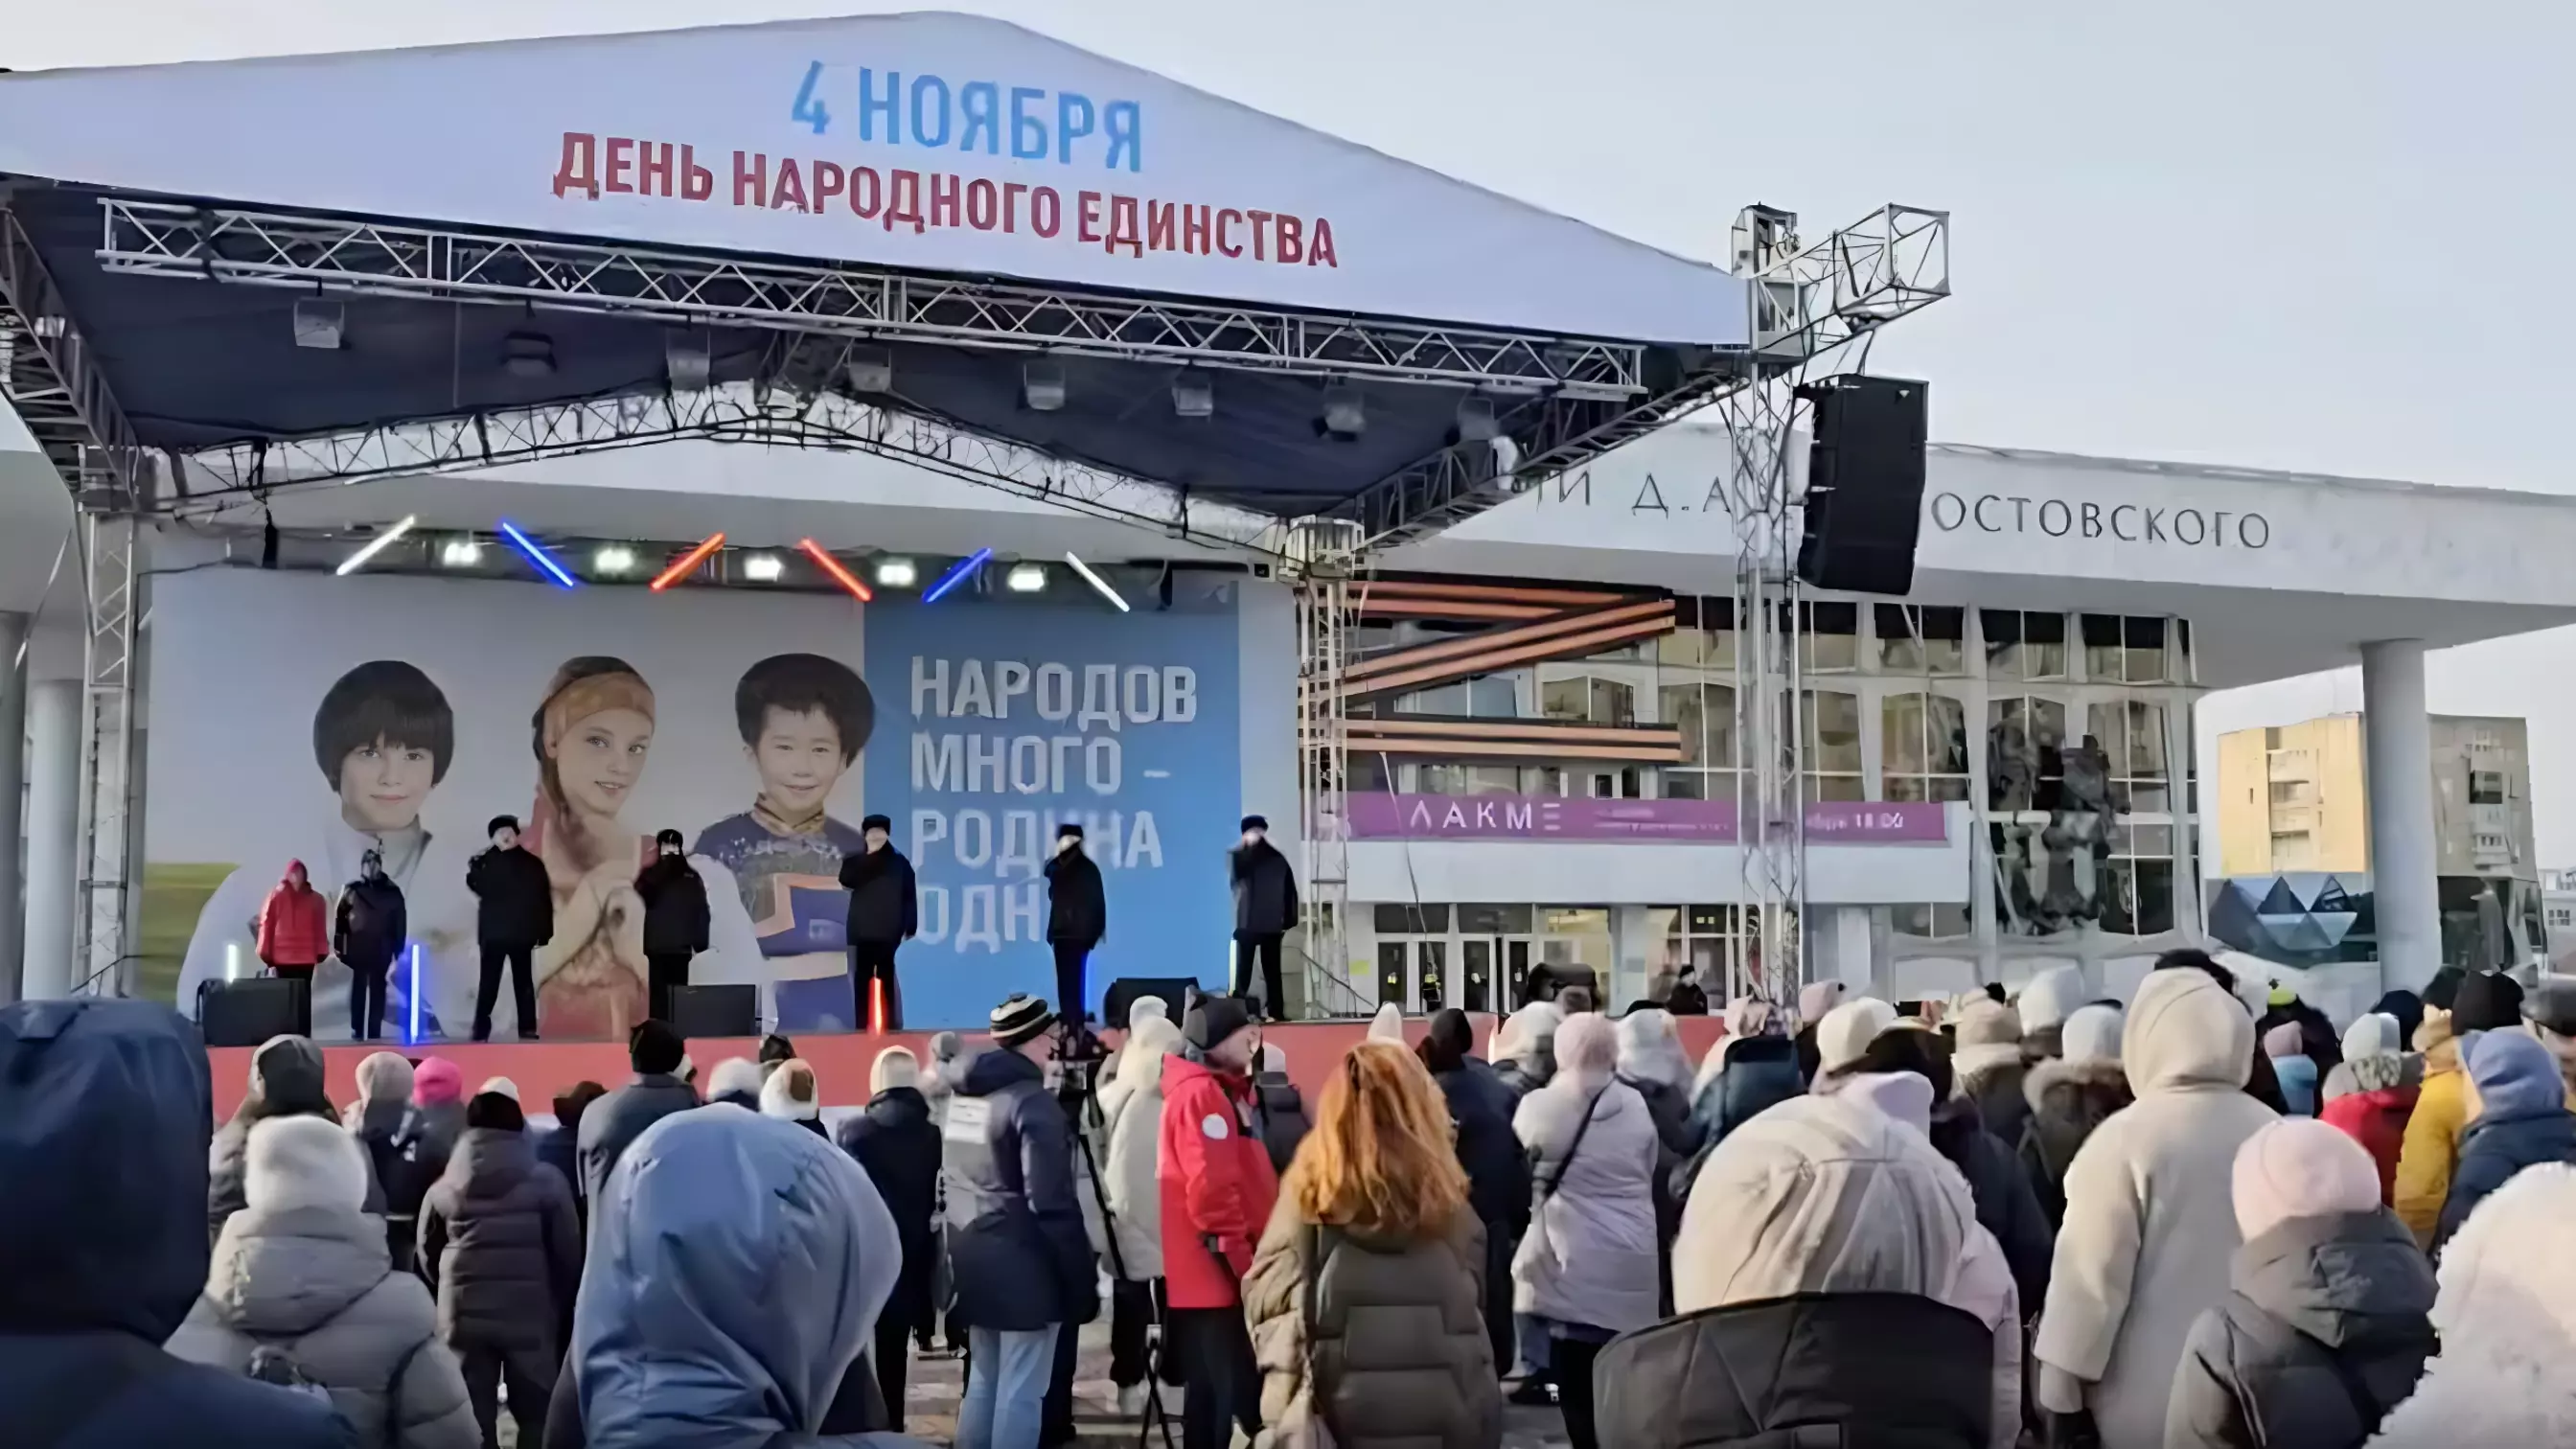 Красноярец рассказал о массовке на концерте в честь Дня народного единства